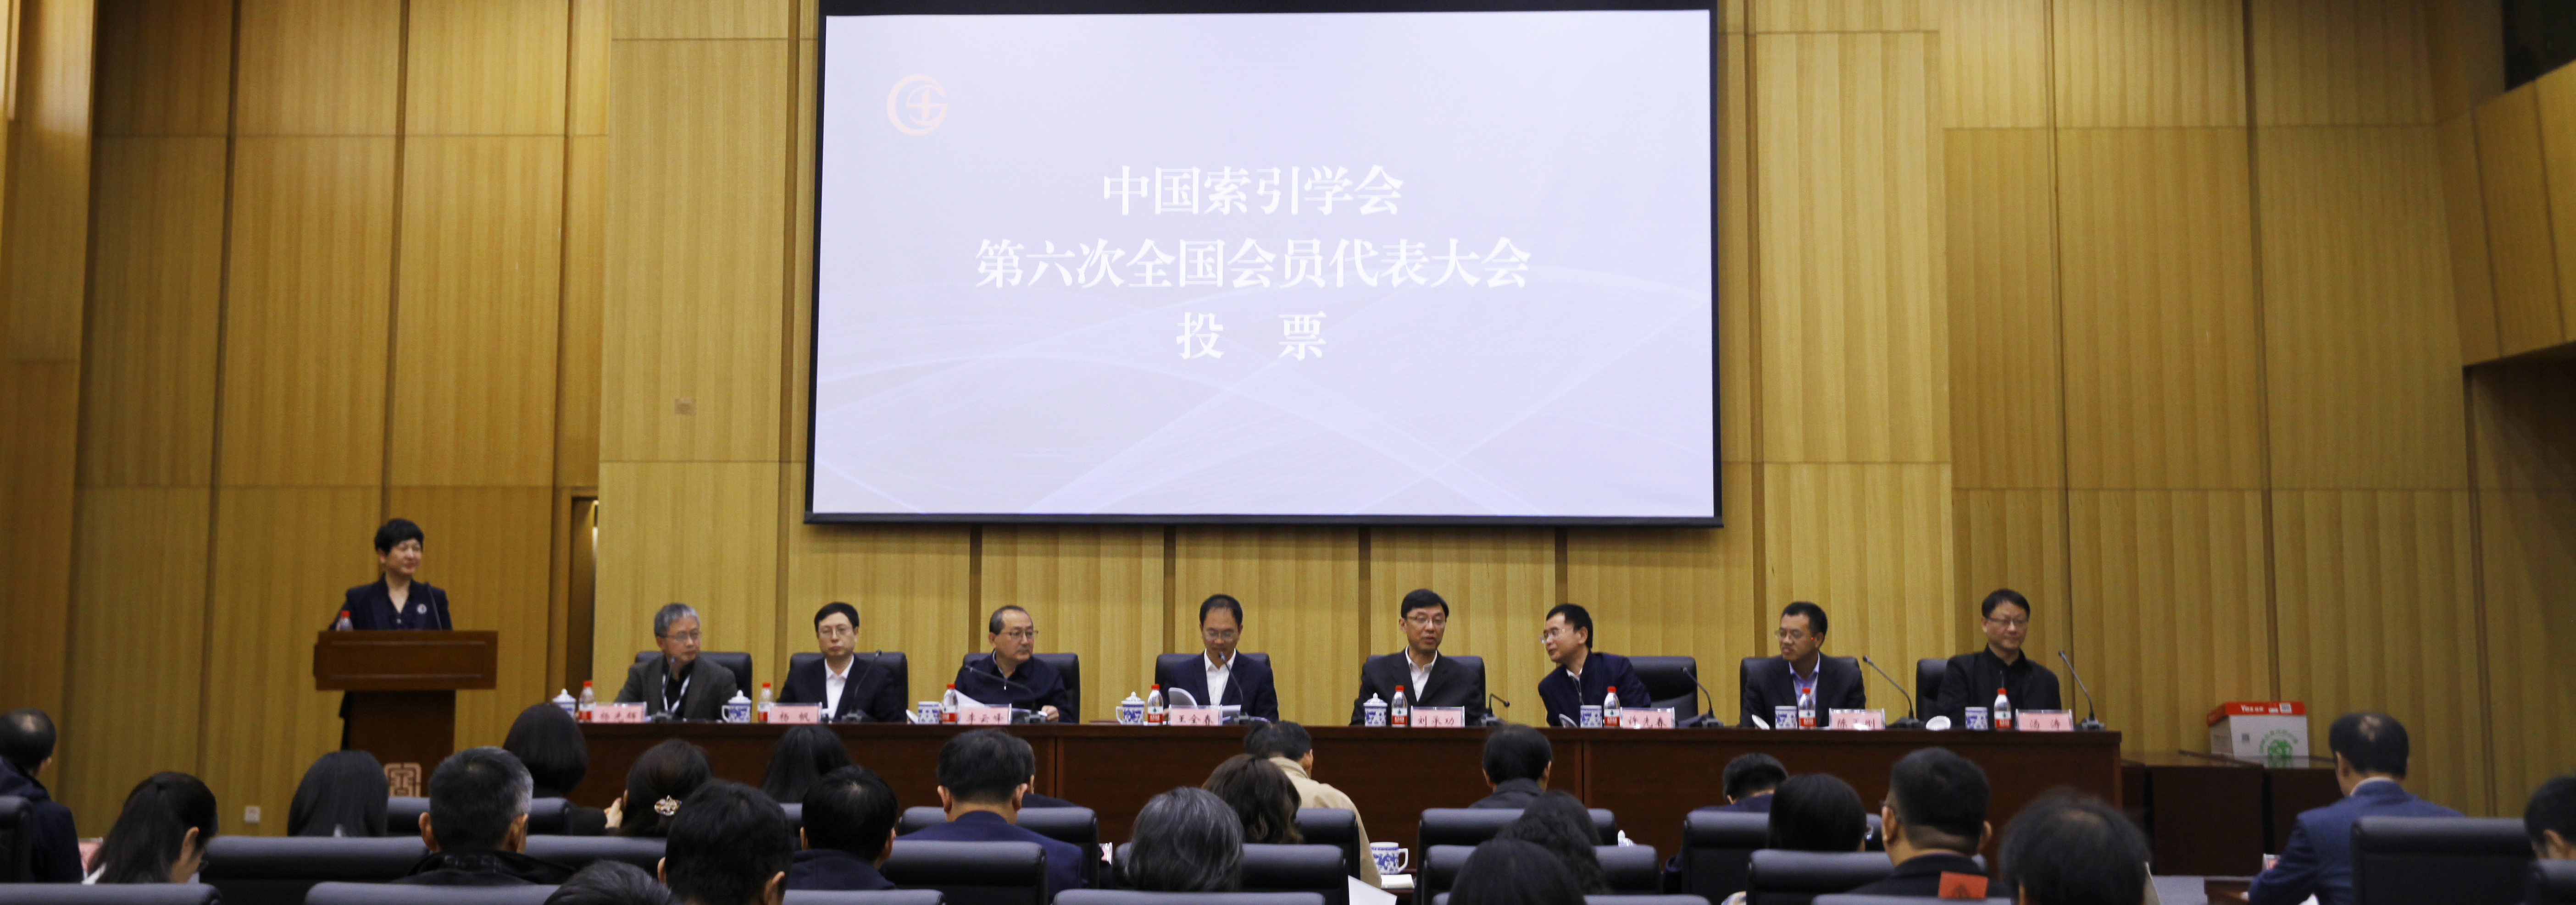 中国索引学会第六次全国代表大会...